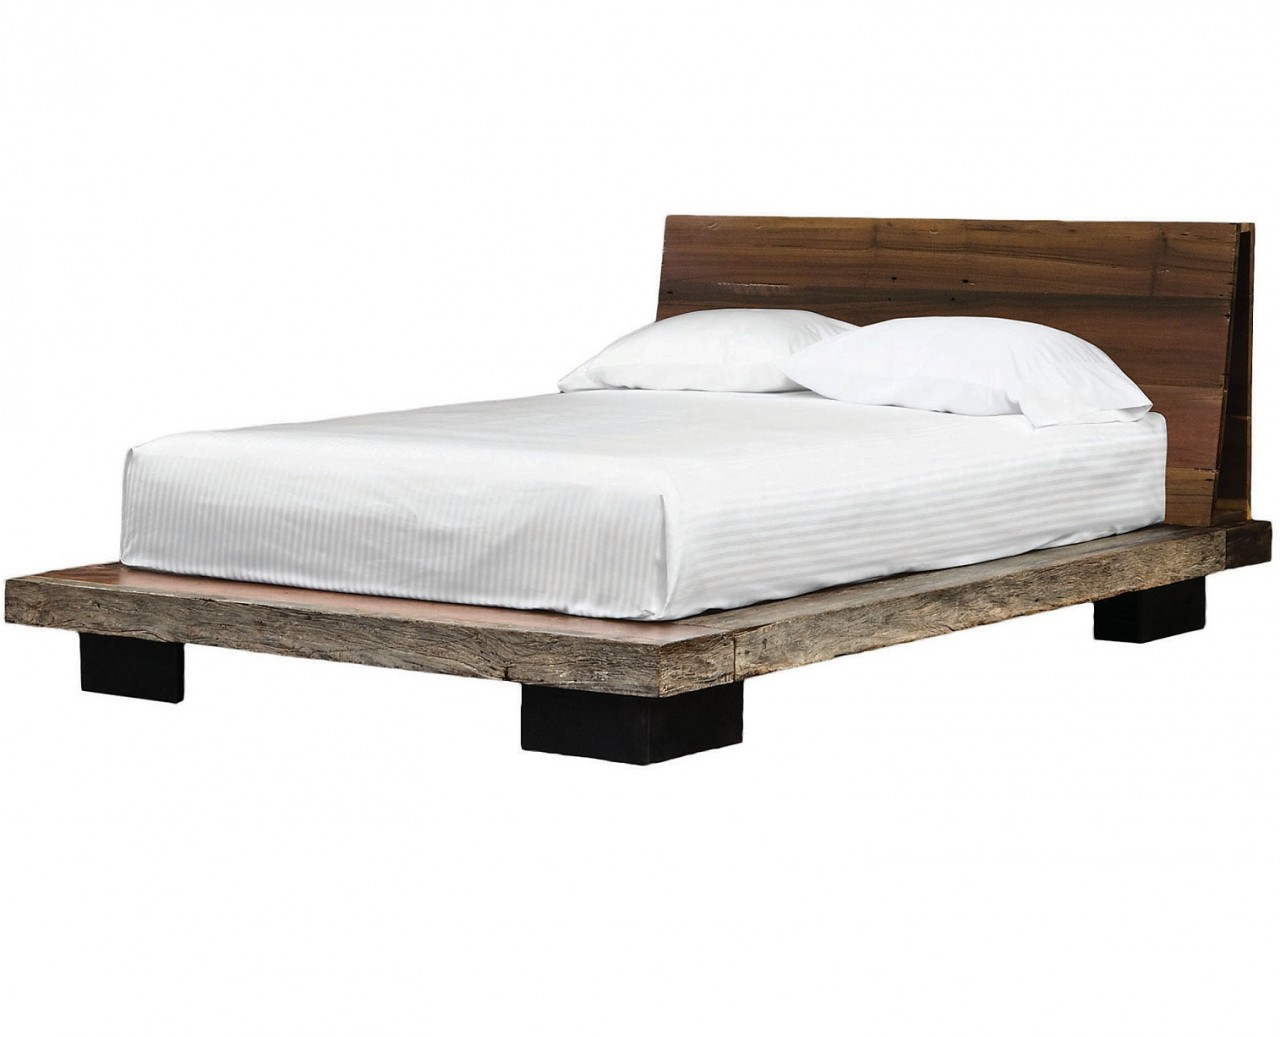 Solid Wood Platform Beds  Eclectic Reclaimed Wood Platform Bed Frames 